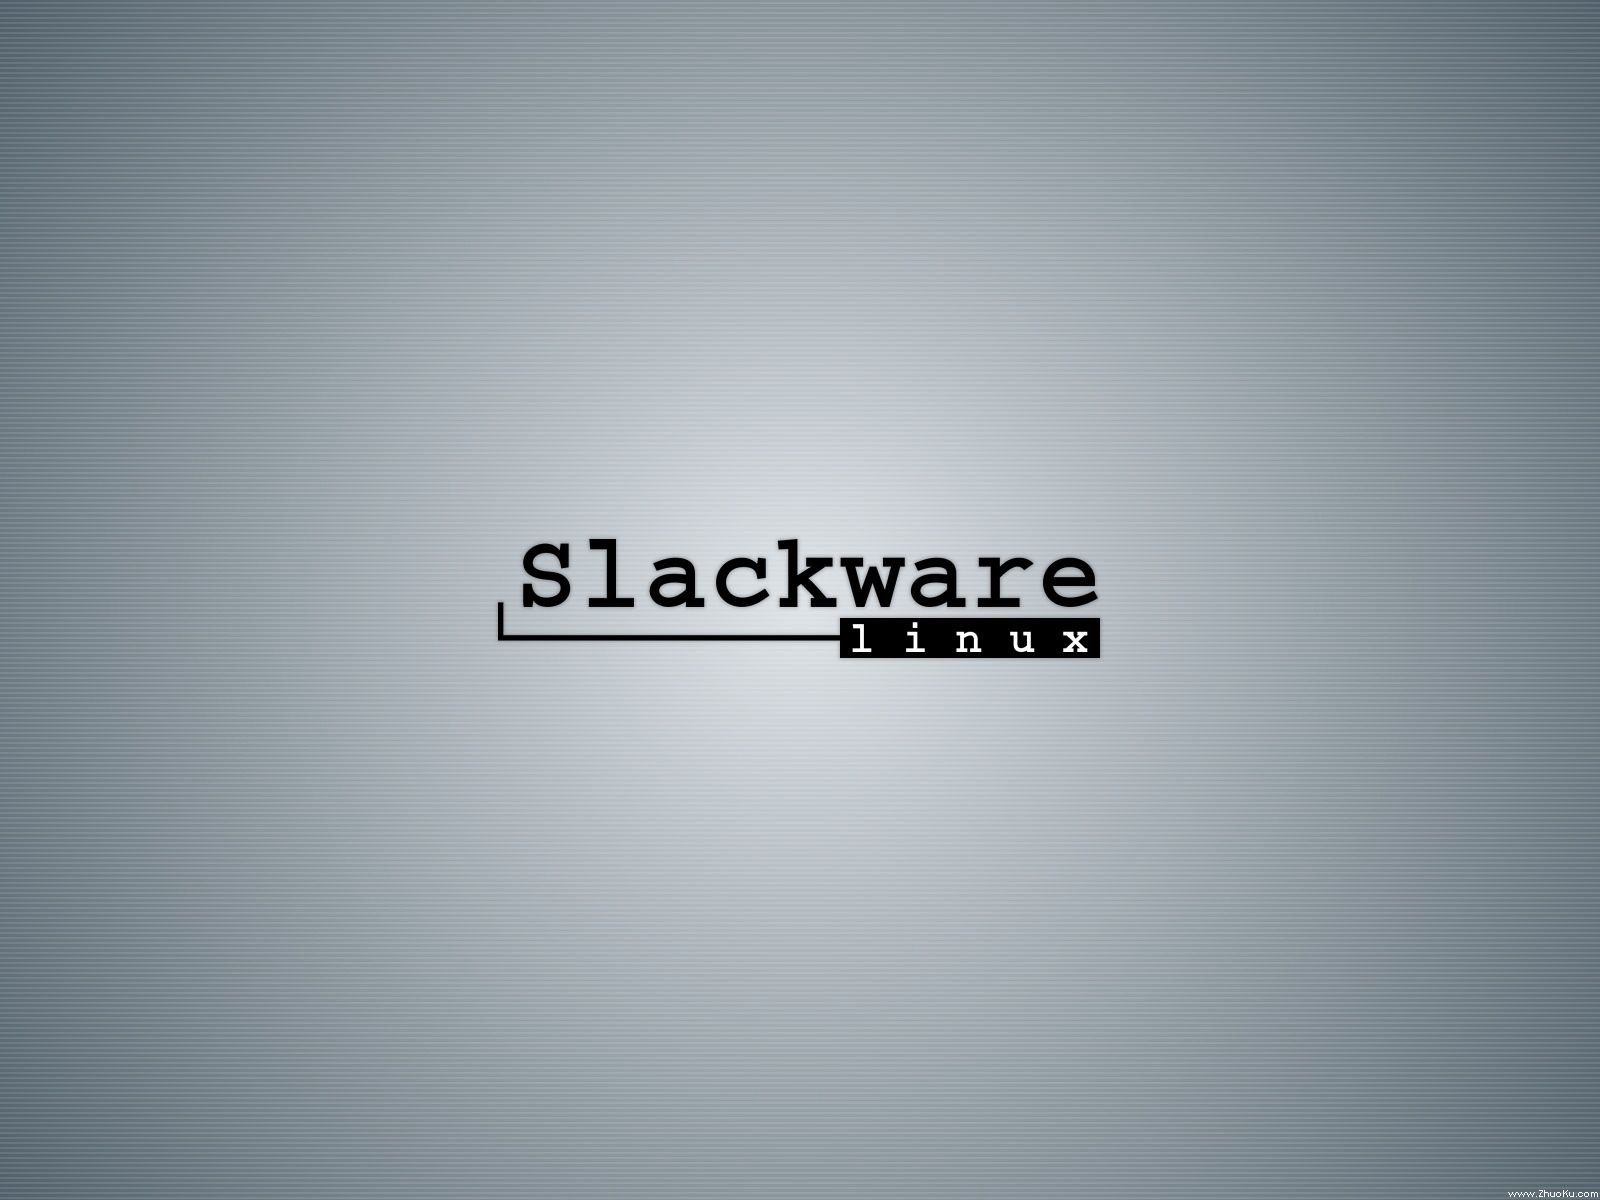 壁纸1600x1200Slackware Linux 1024 768 1280 1024 1600 1200 壁纸45壁纸 Slackware壁纸 Slackware图片 Slackware素材 系统壁纸 系统图库 系统图片素材桌面壁纸